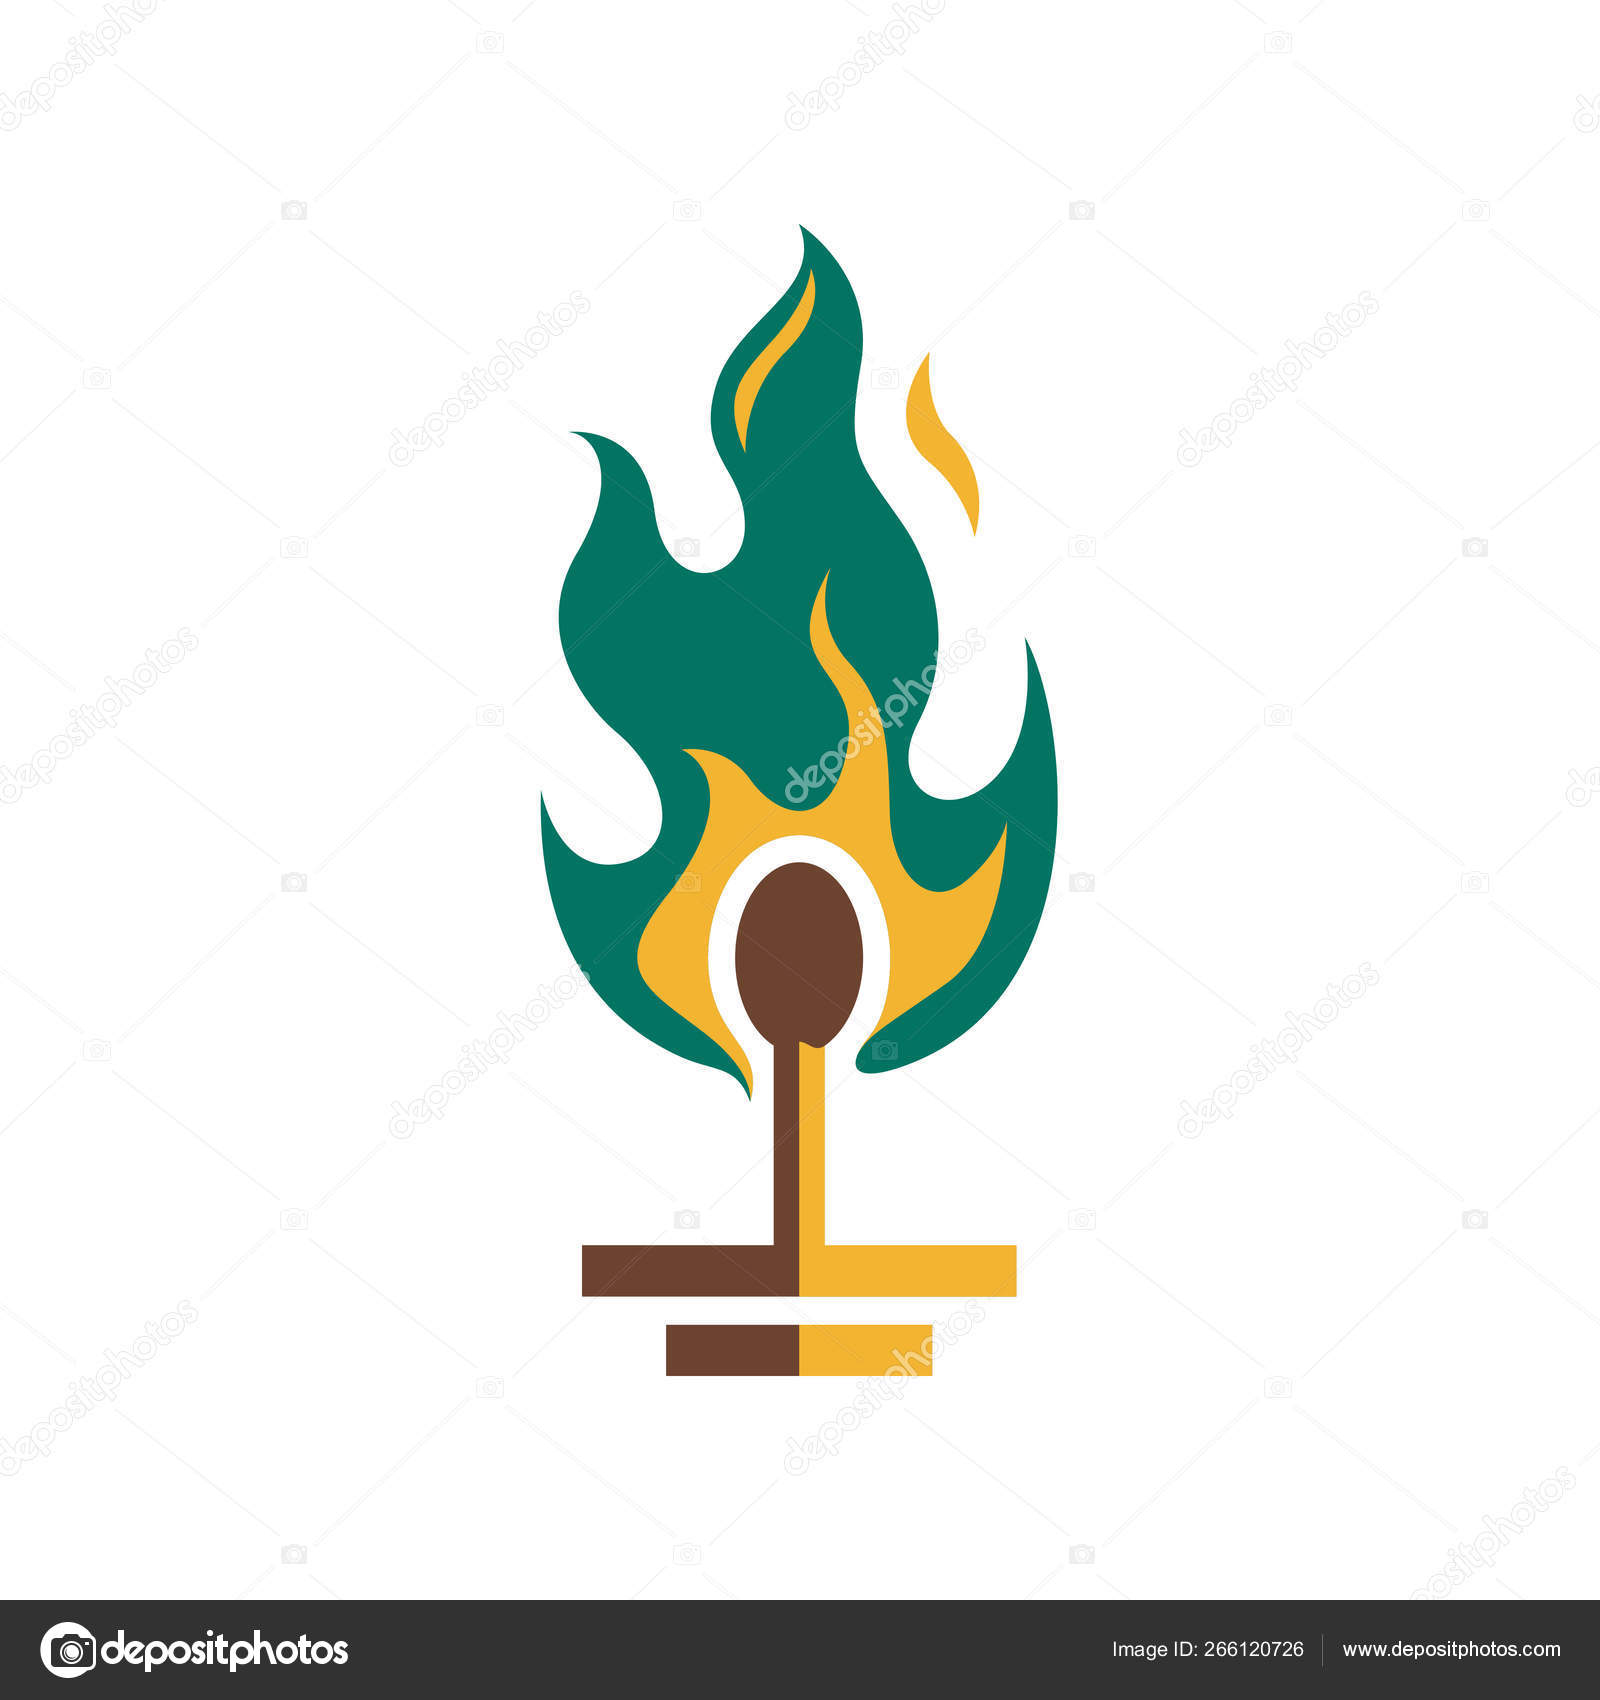 Ilustração de fogo, desenho de fogo, logotipo de fogo chama dos